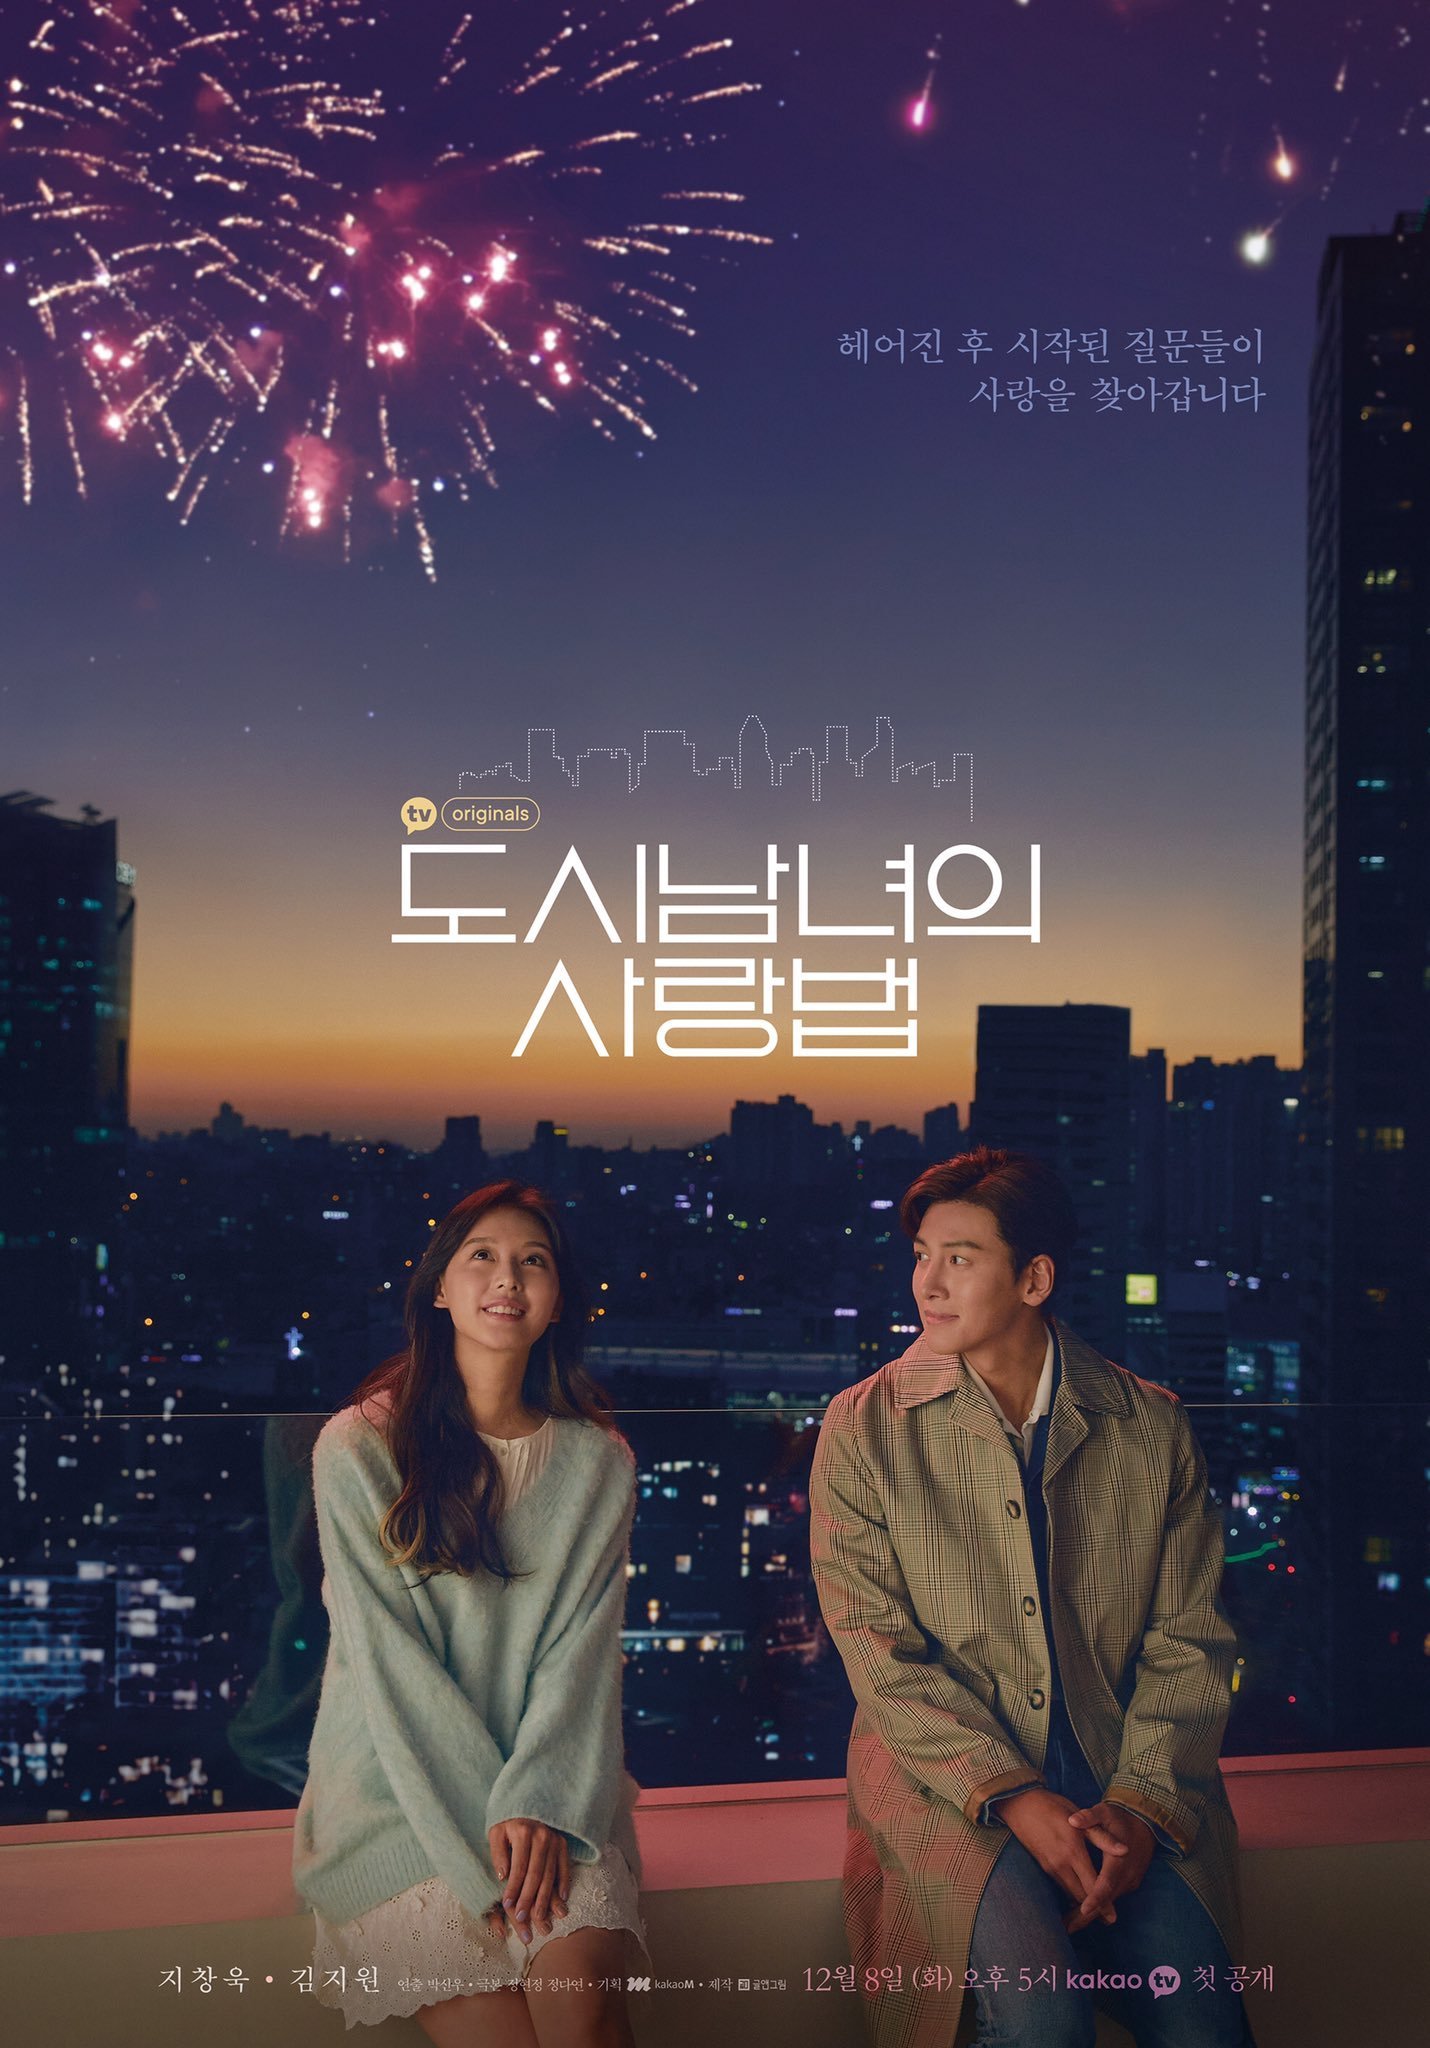 ดูหนังออนไลน์ฟรี ซีรี่ย์เกาหลี Lovestruck in the City (2020) ความรักในเมืองใหญ่ ซับไทย